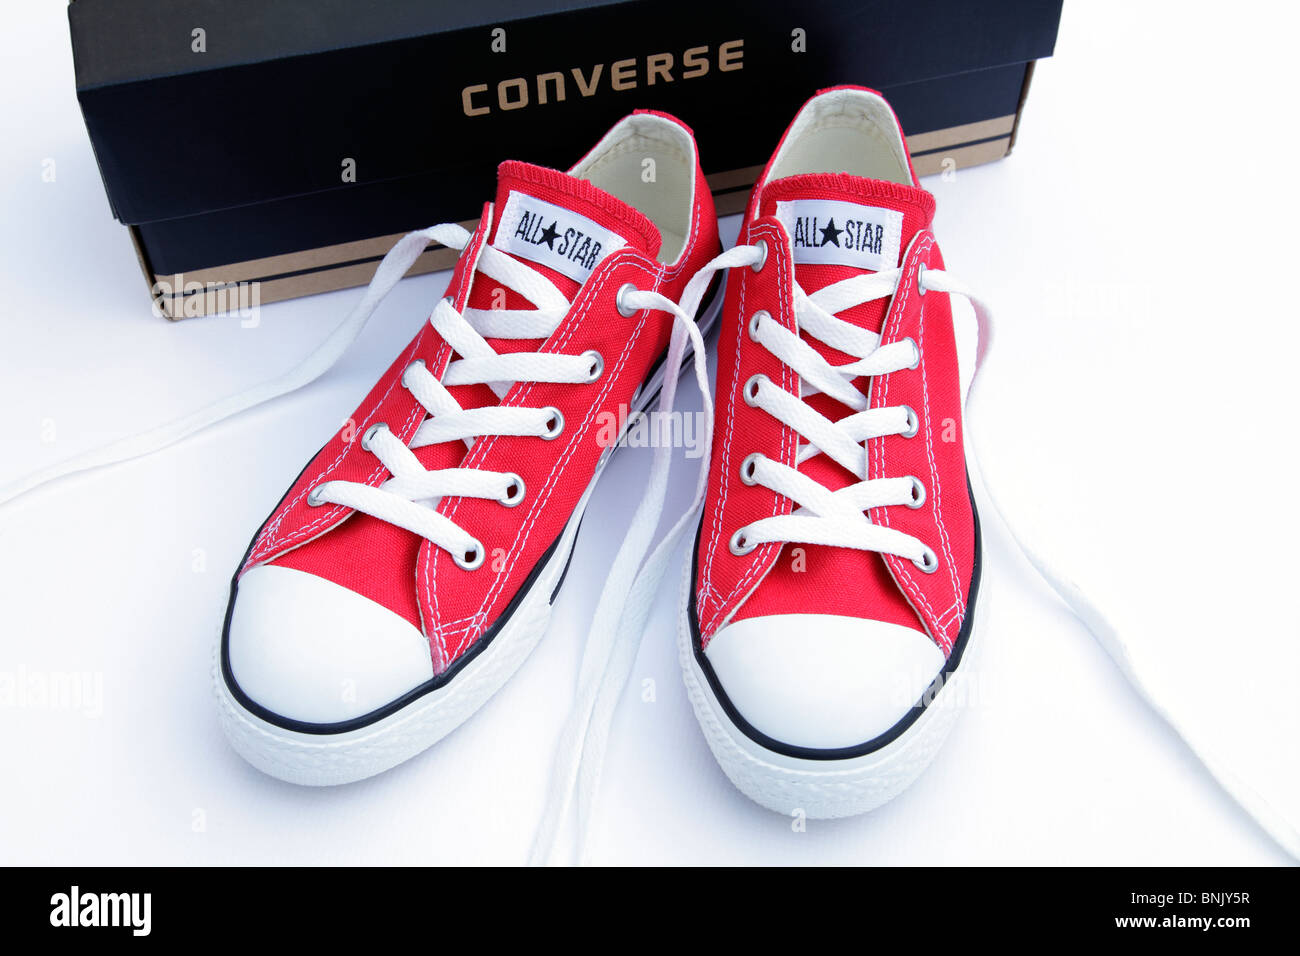 nuevo de zapatillas Converse All Star rojas con una caja aislada sobre un fondo blanco, Reino Unido Fotografía de stock Alamy